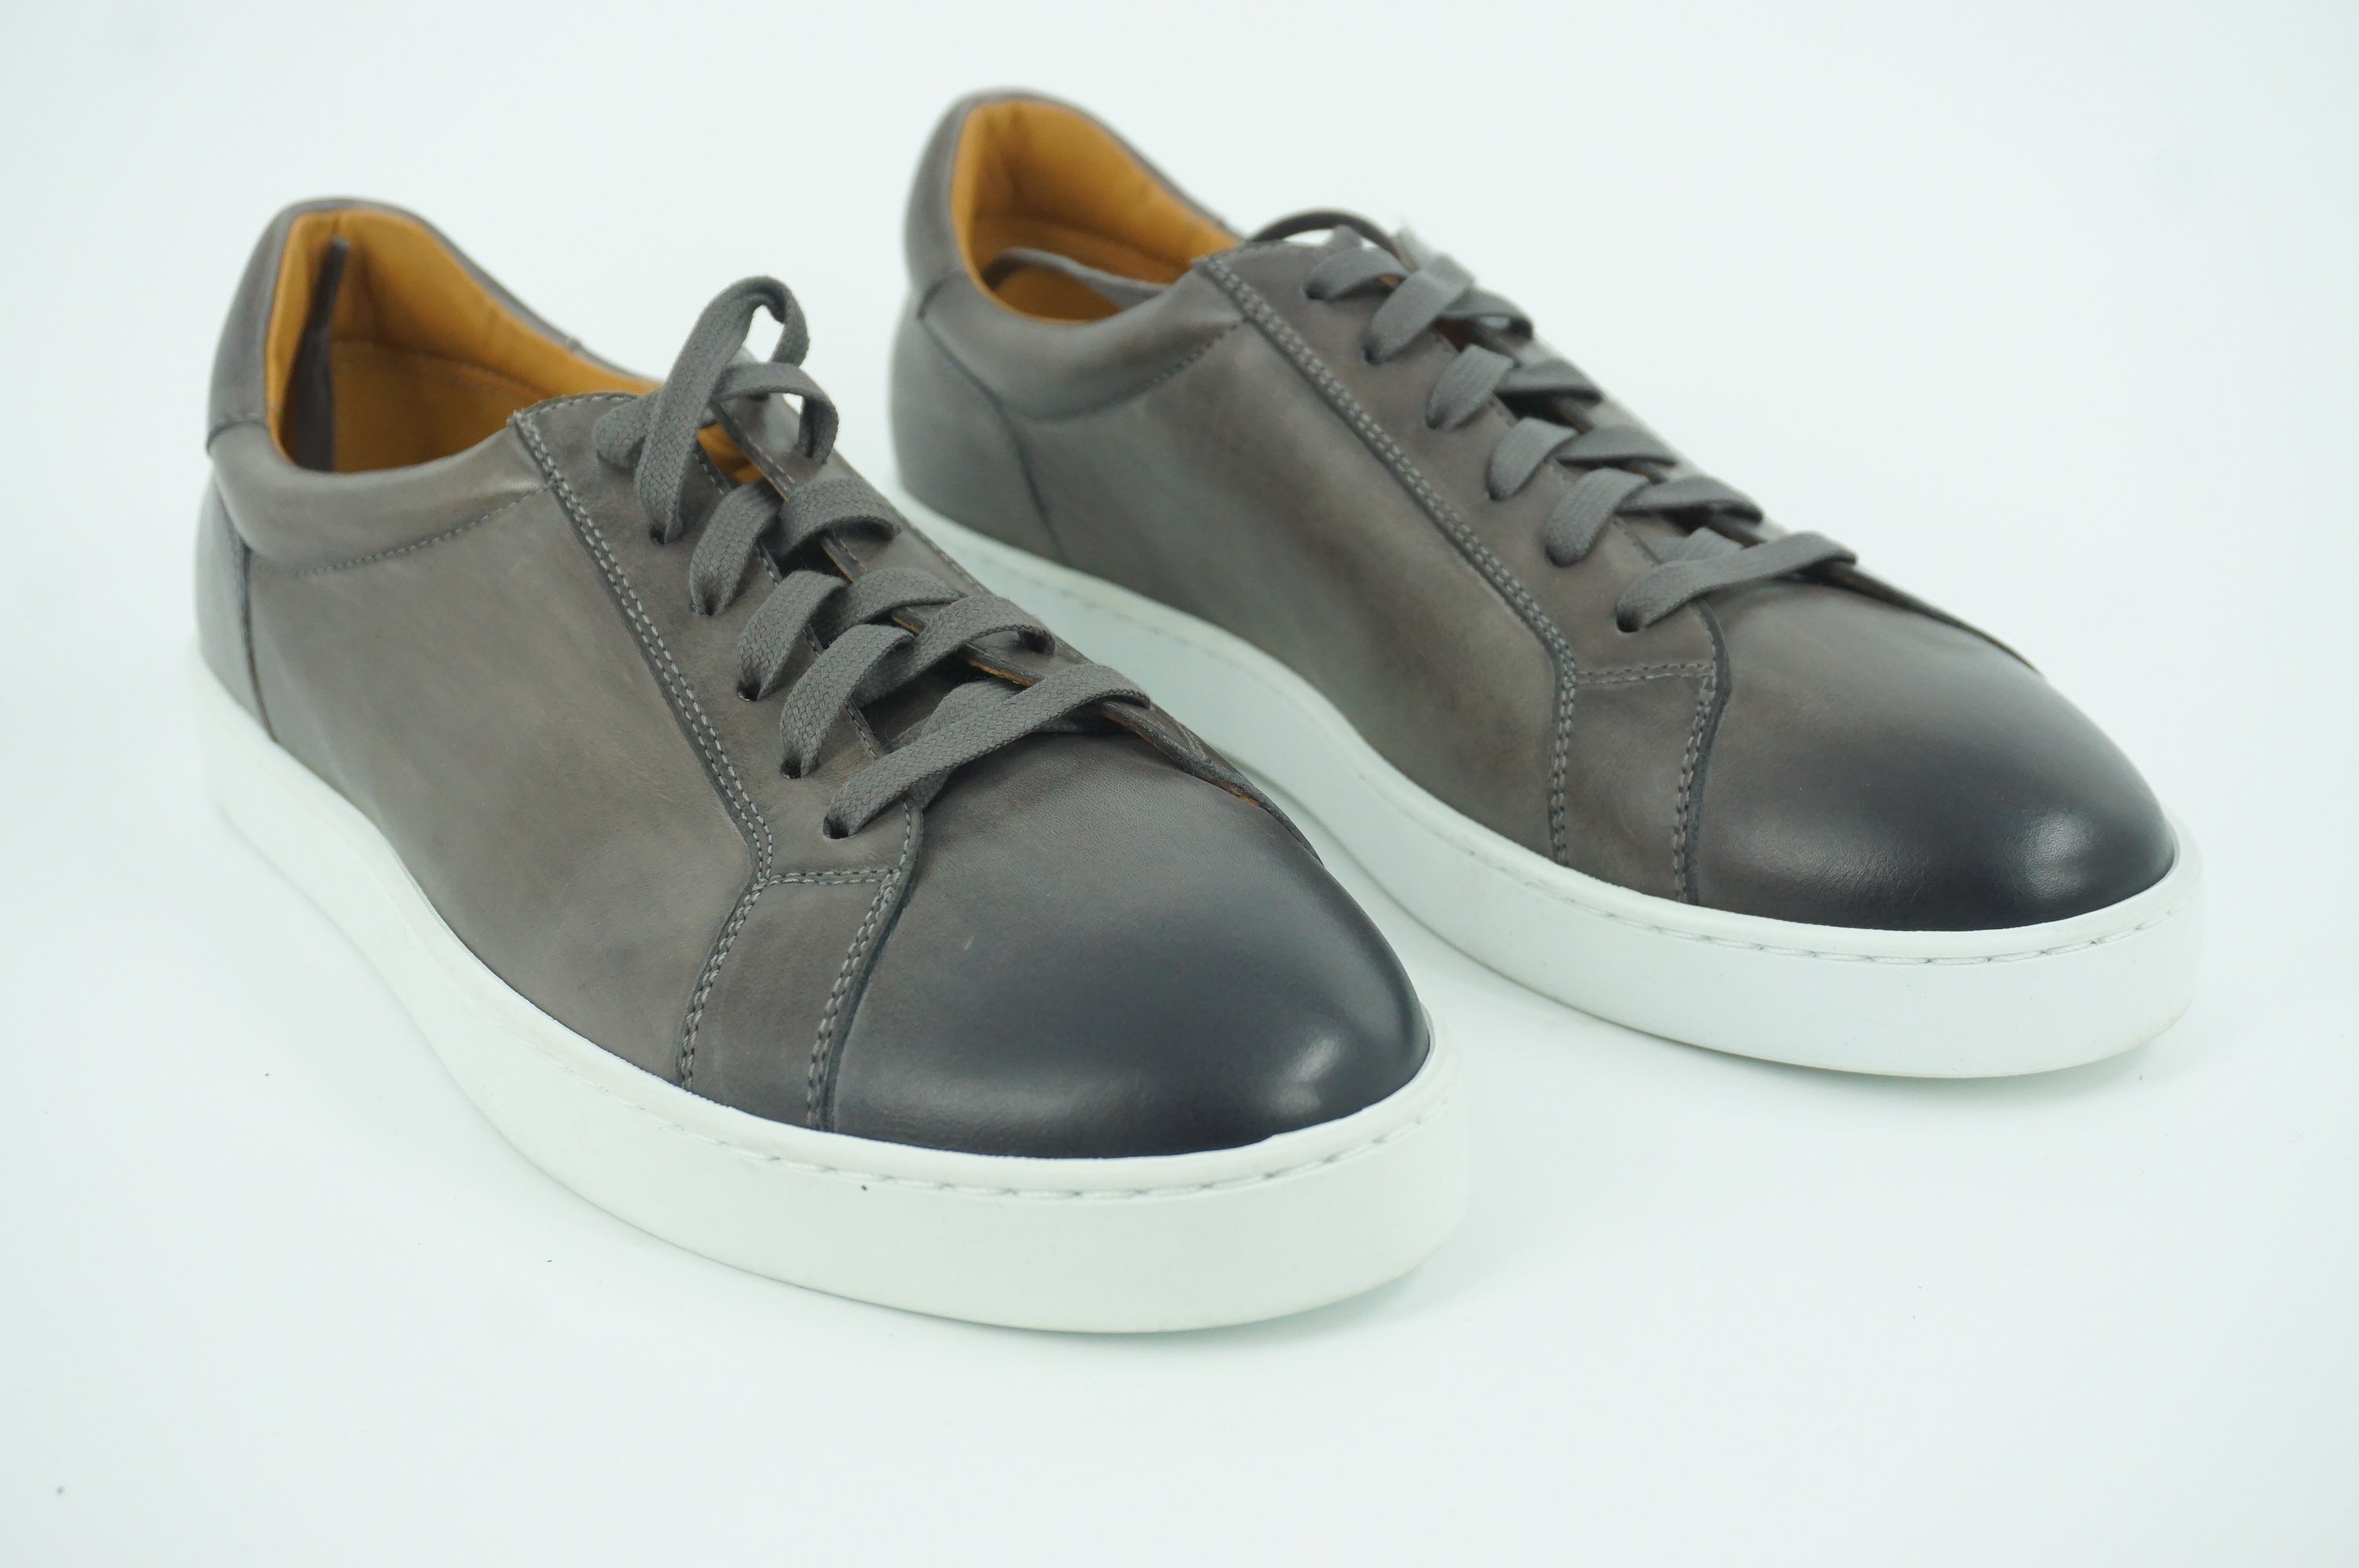 Magnanni Costa Lo Retro Sneaker SZ 9 US / 42 NIB Logo Grey Leather Low Top